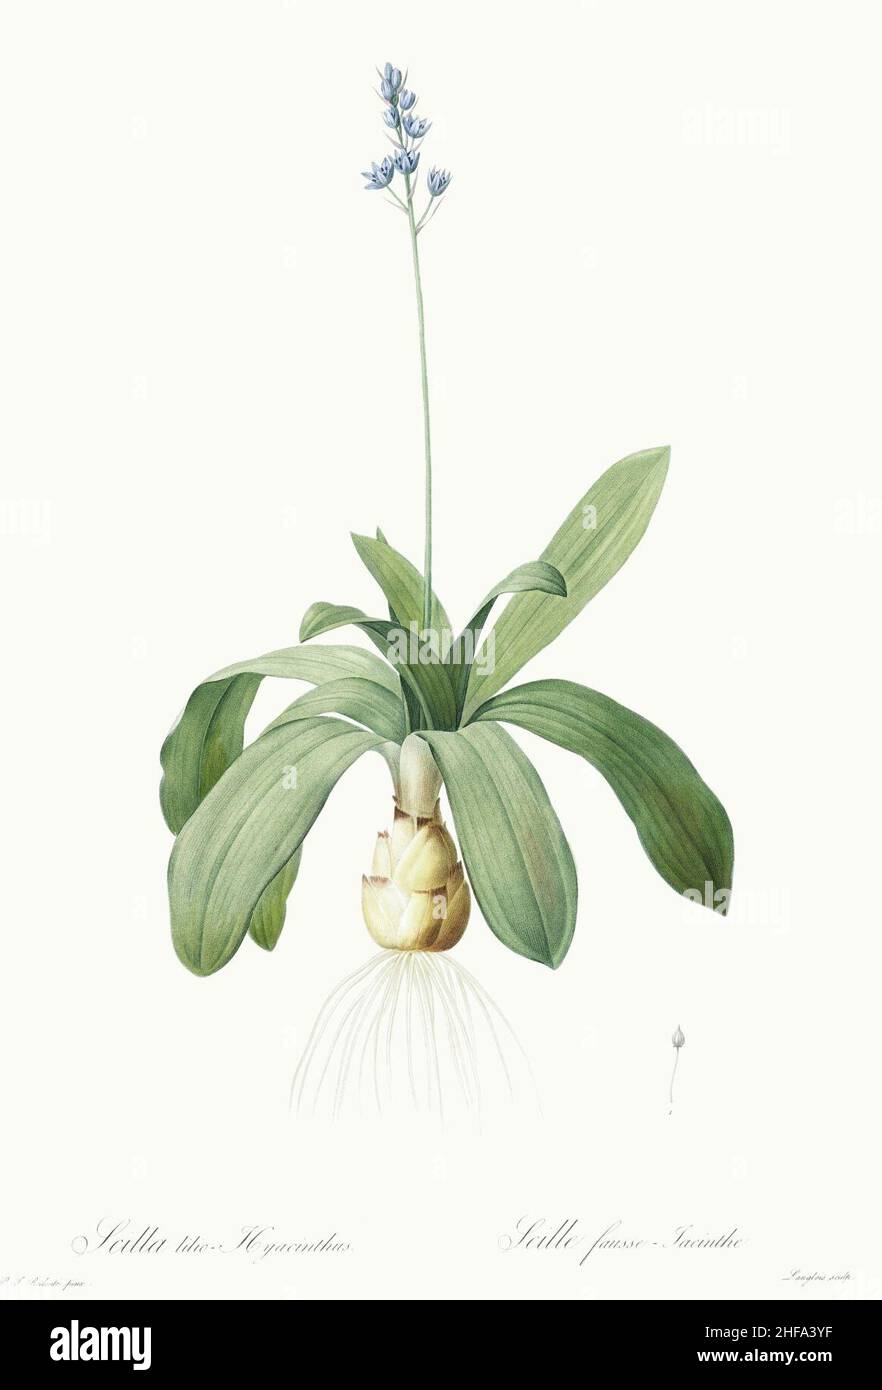 Scilla-lilio-hyacinthus - Les Lilliacées - vol. 4 - t. 205 - clean. Stock Photo